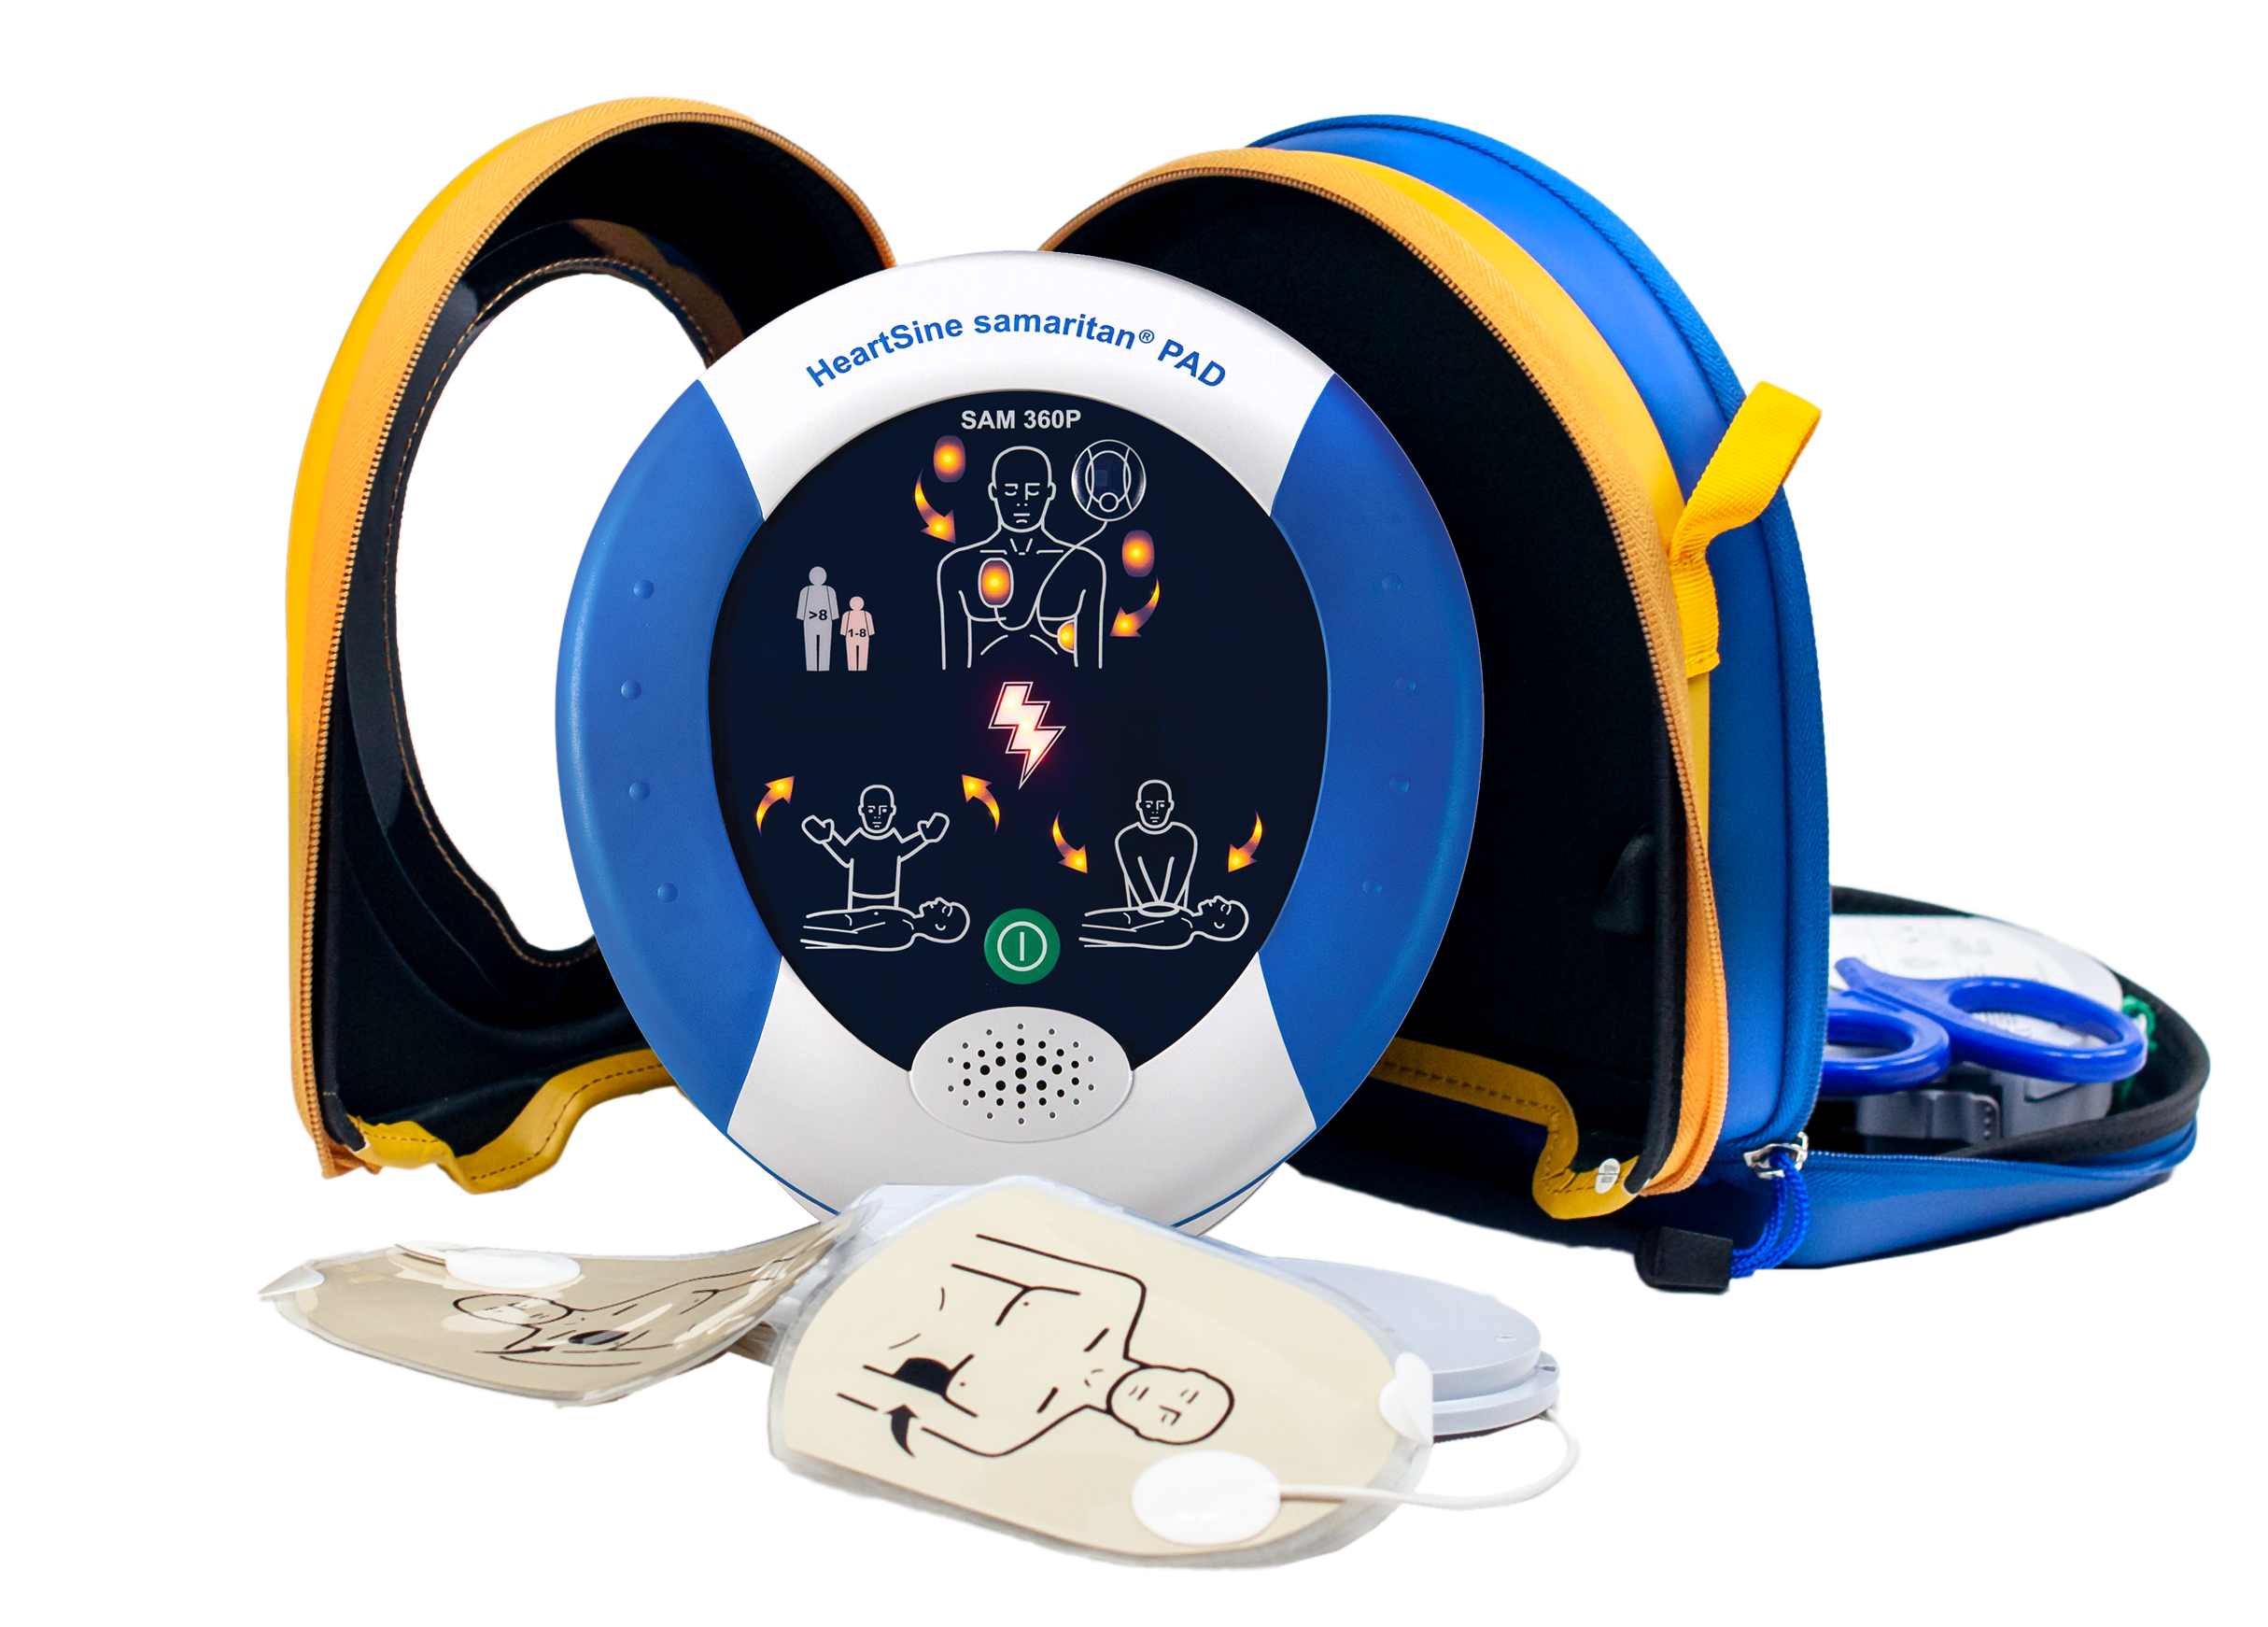 HeartSine SAM 360P Defibrillator/AED, mit Herzdruckmassage Metronom & automatischer Schockabgabe, 8 J. Herstellergarantie